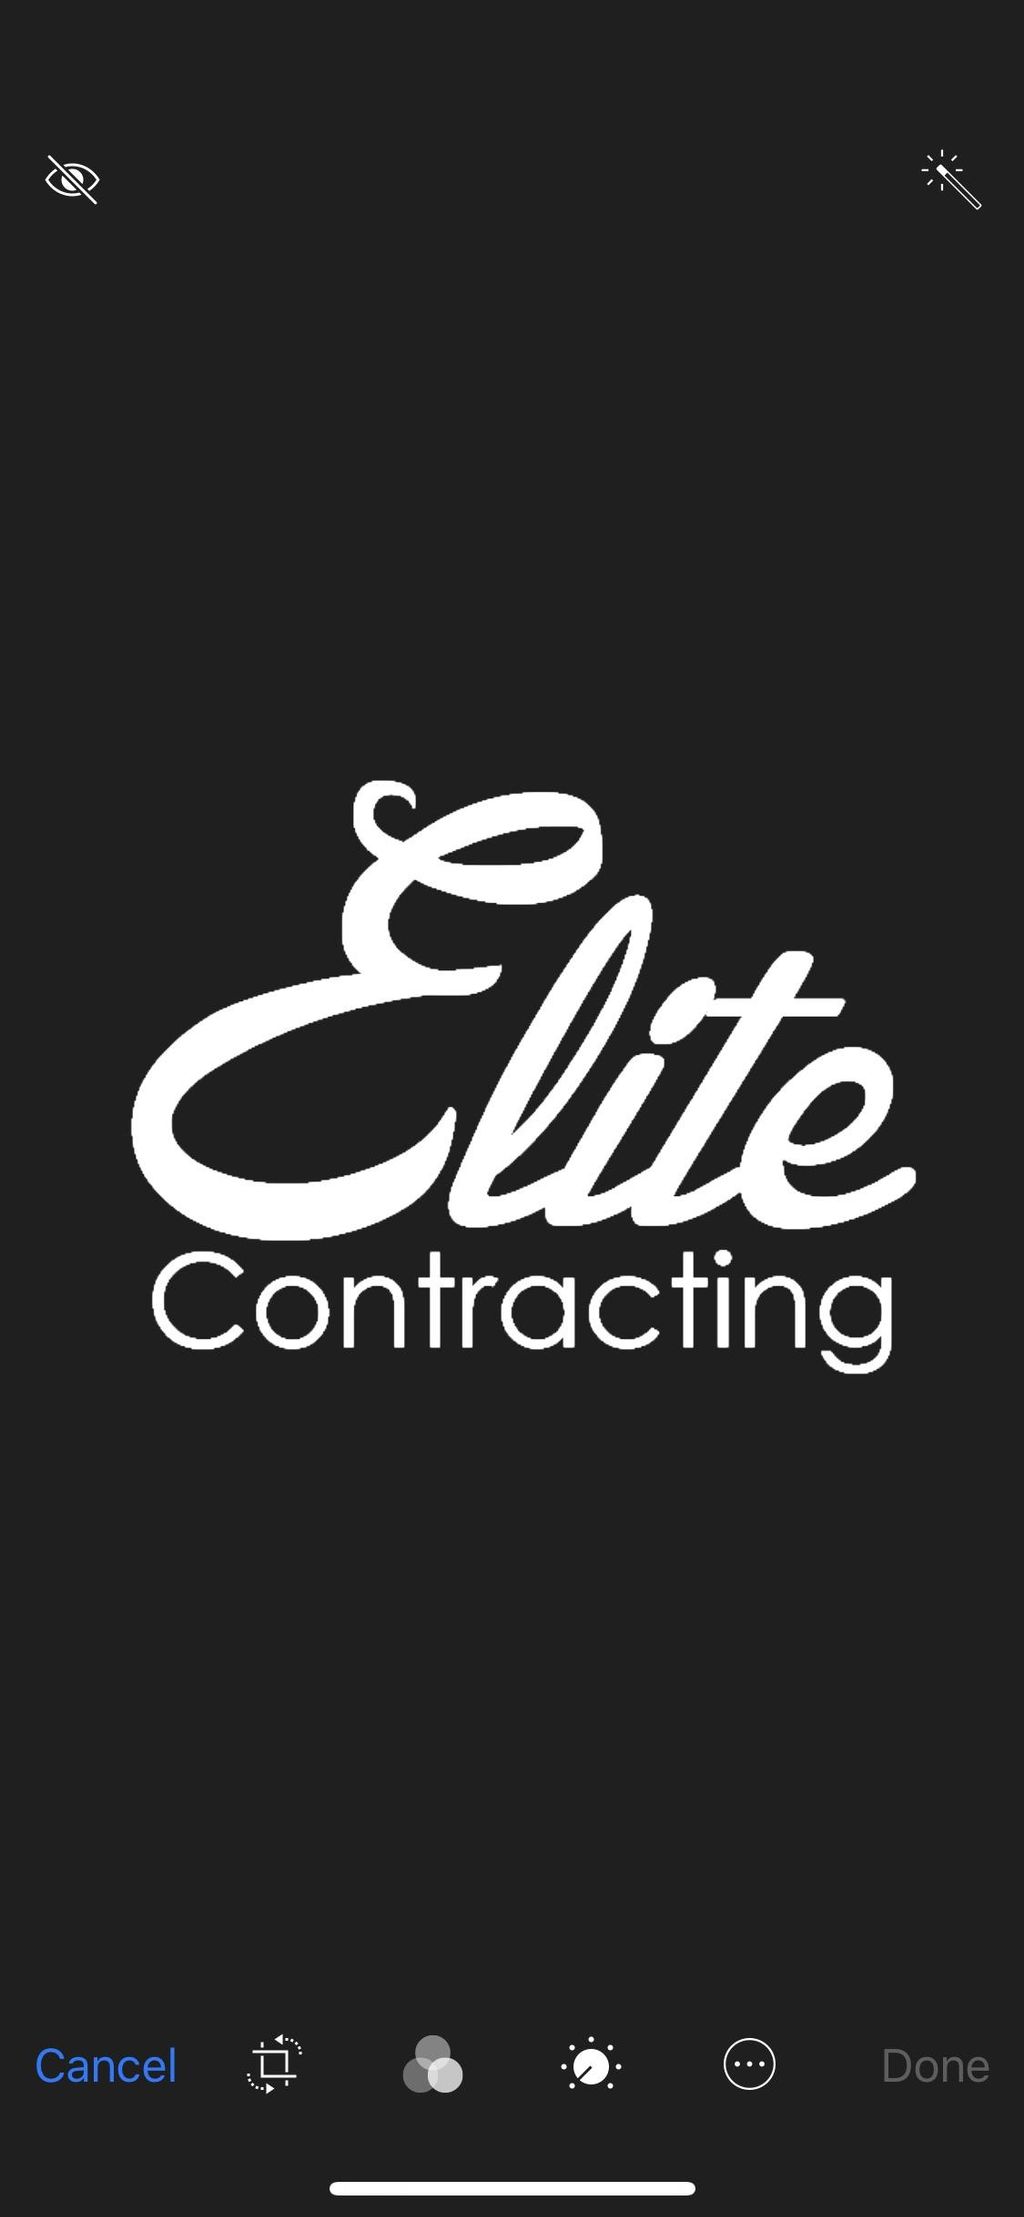 Elite Contracting